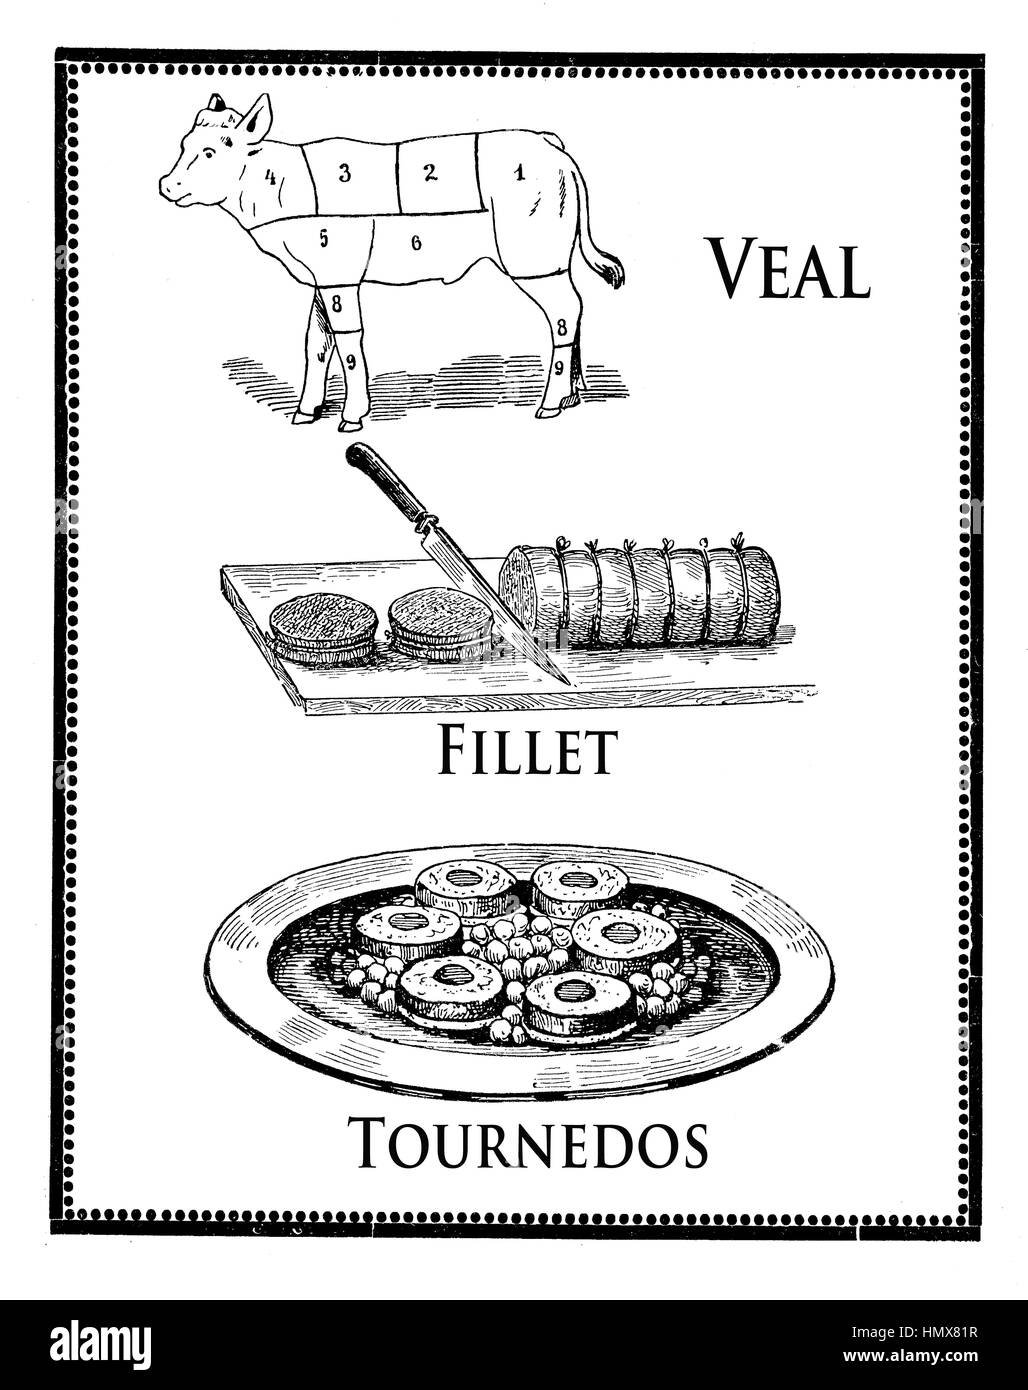 Vintage Küche Gravur, Gebratenes Kalbfleisch Filet, Tournedos und Kalb Diagramm mit nummerierten Abschnitten Stockfoto